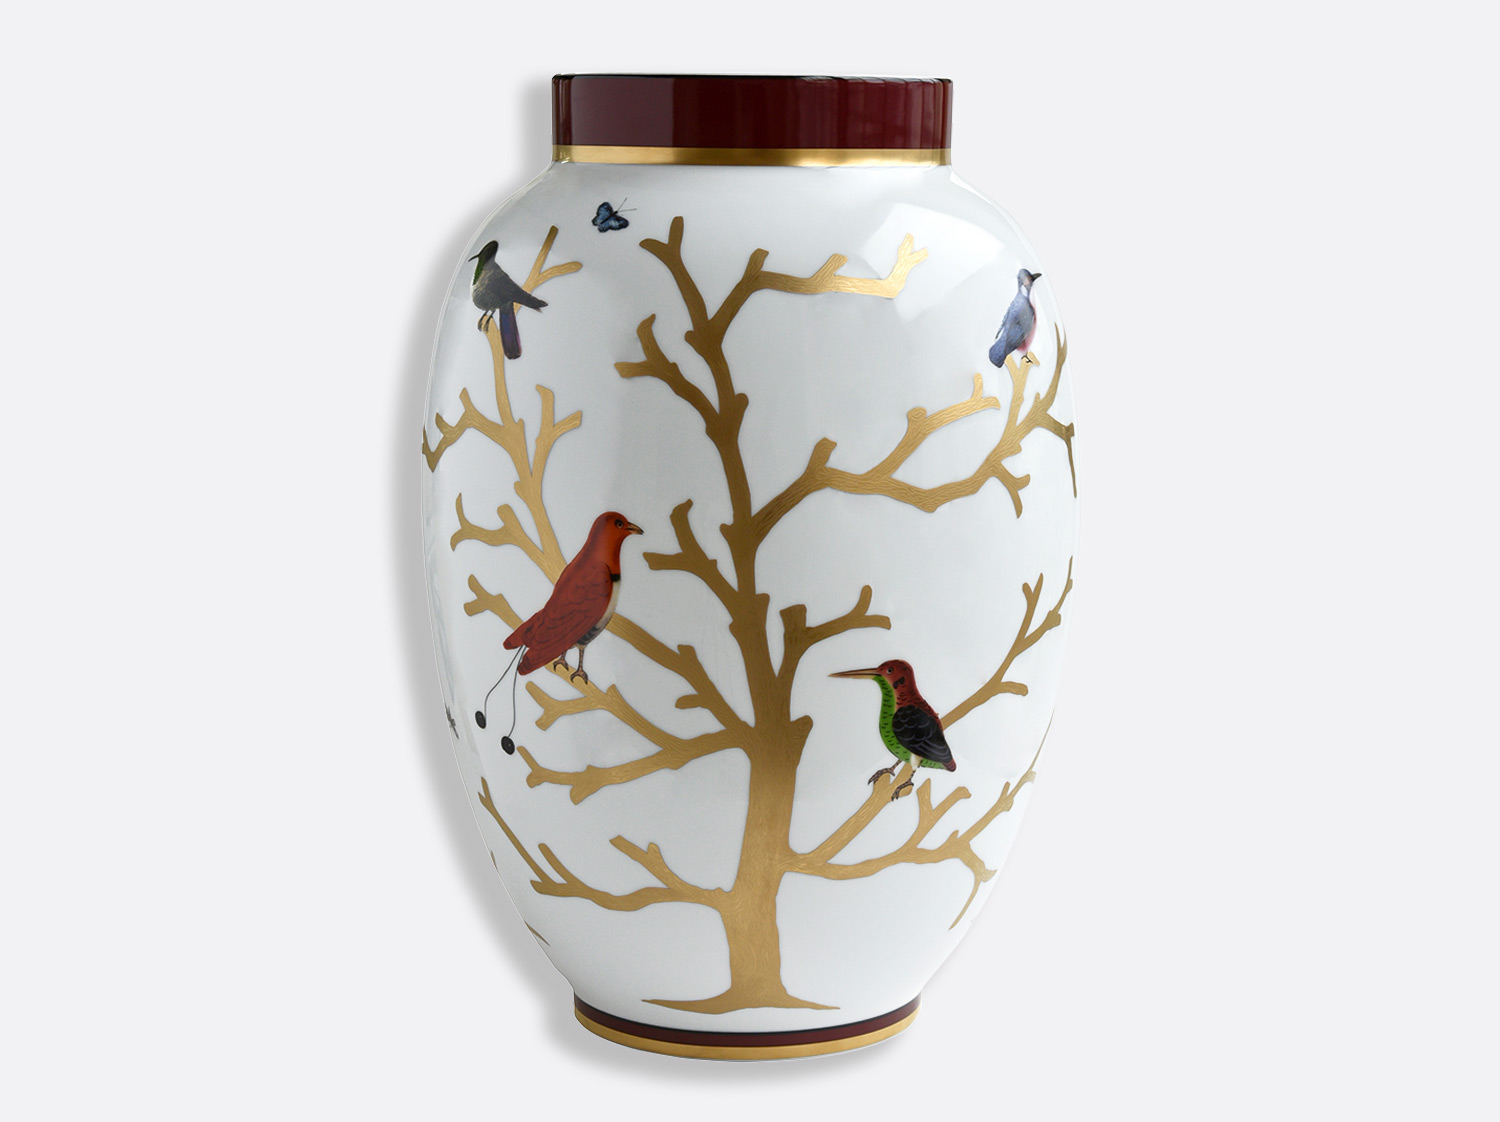 ポティーシュ　H 57 cm  en porcelaine de la collection Les oiseaux - serie limitee Bernardaud